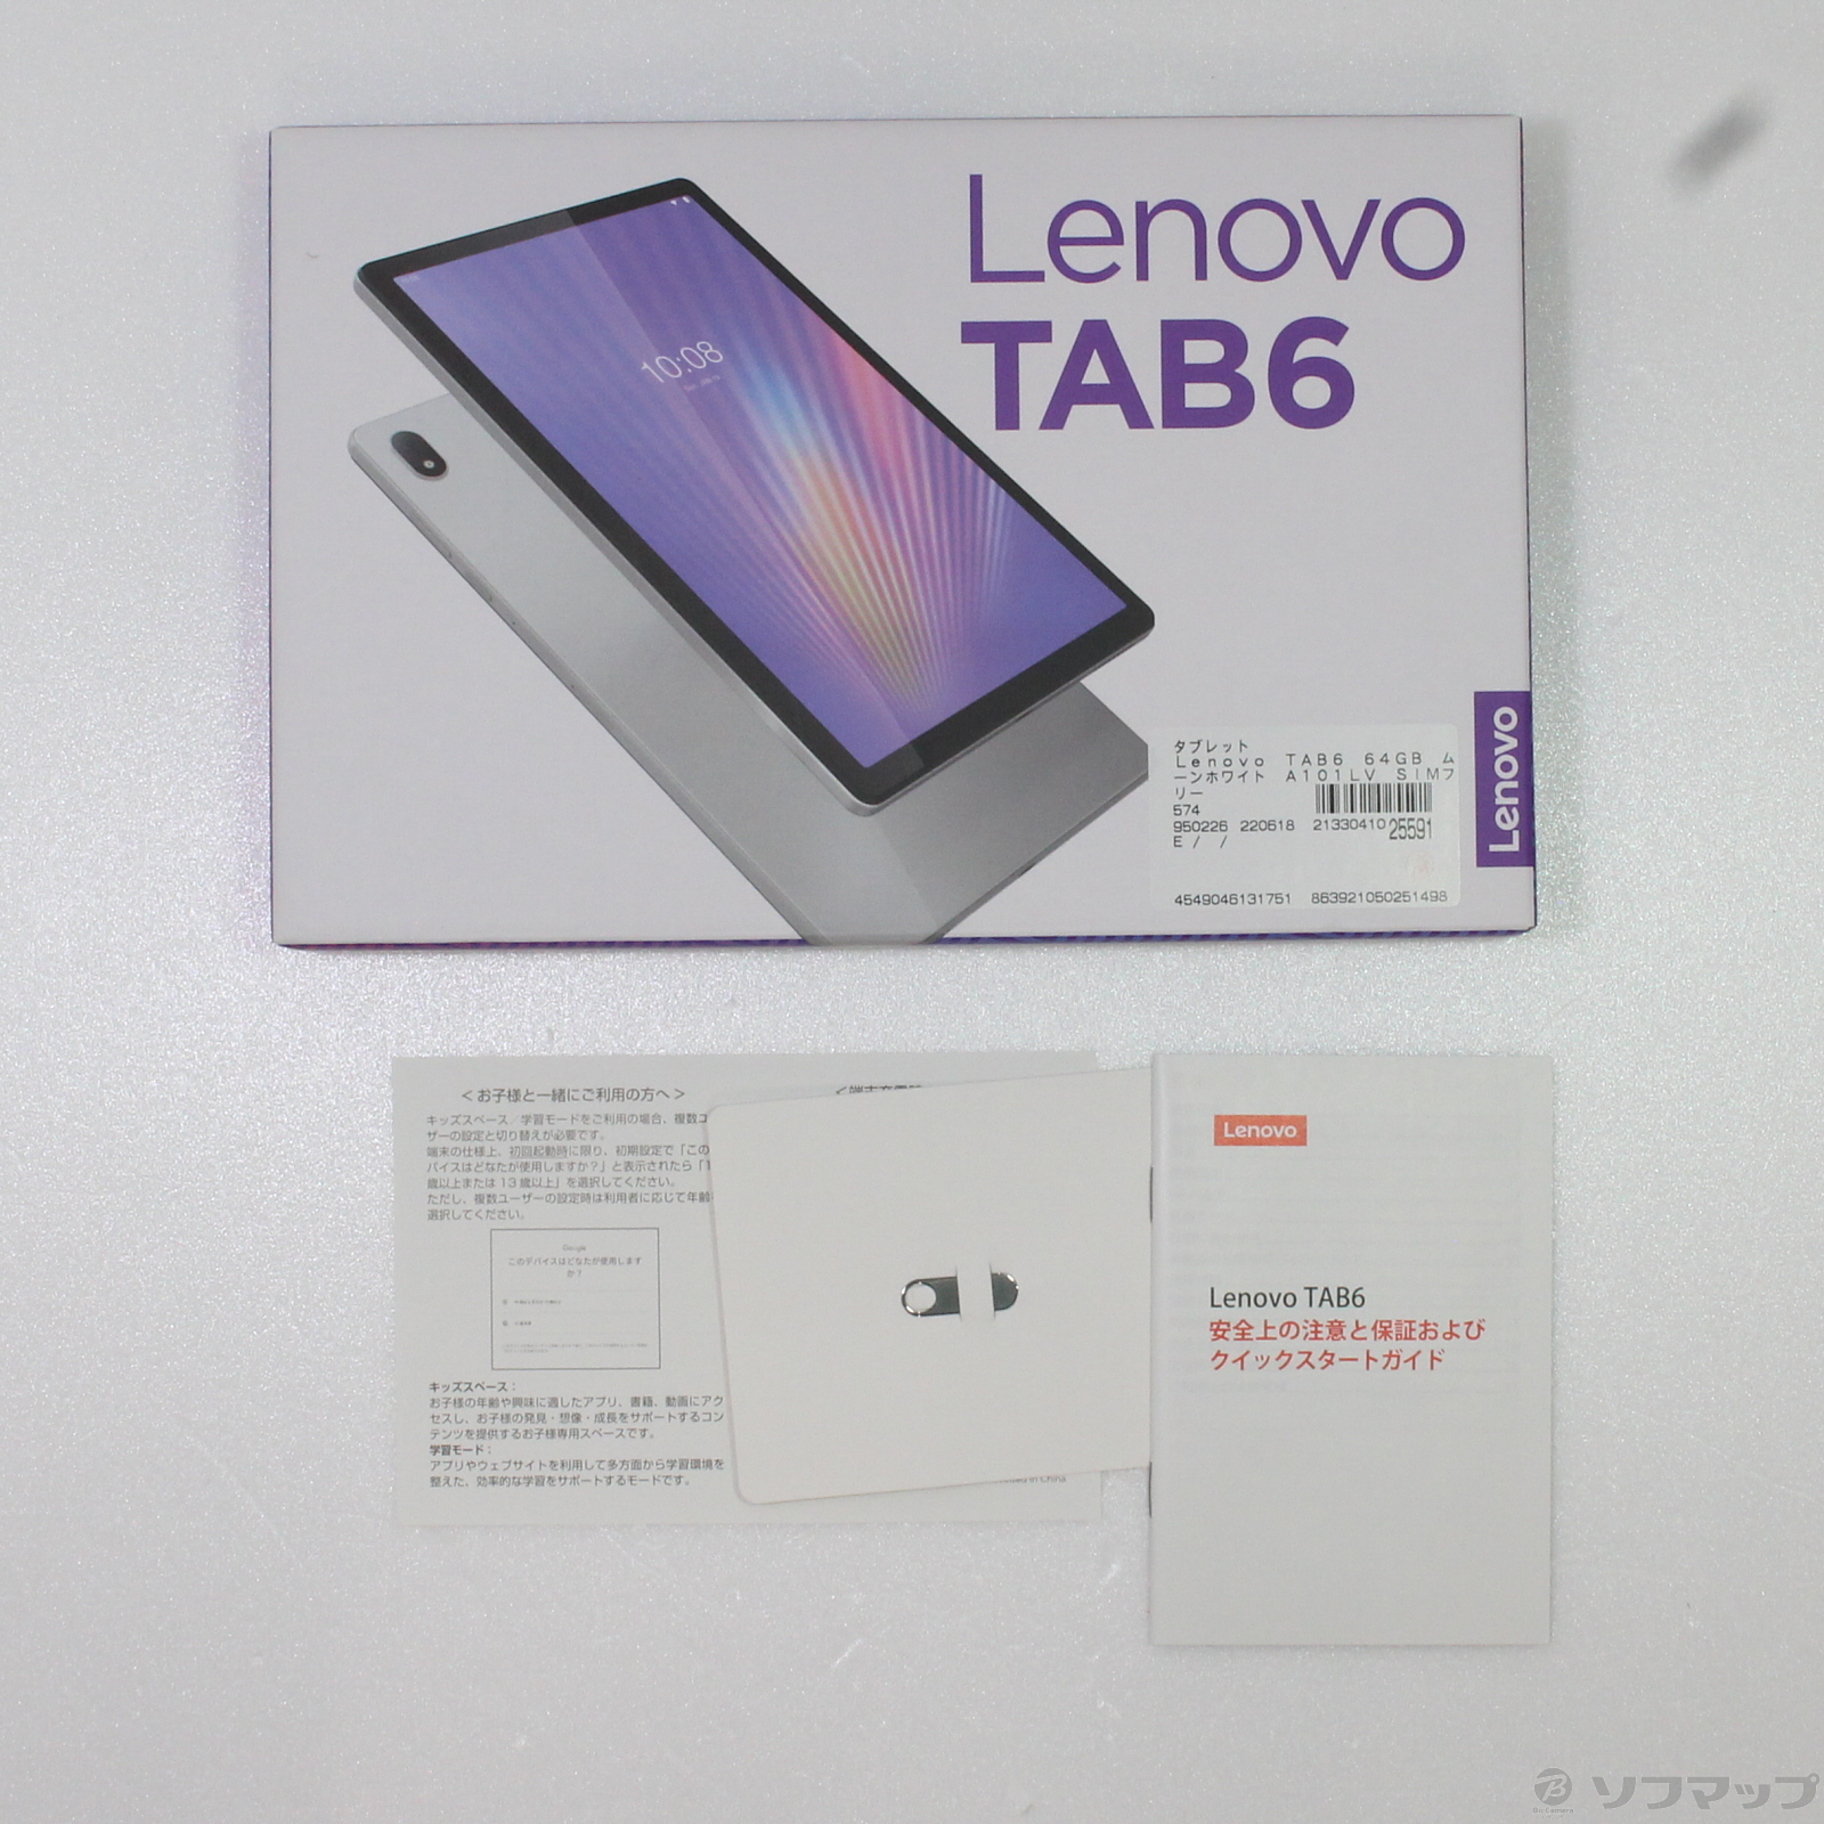 新品未使用 Lenovo TAB6 残債なし - Androidタブレット本体